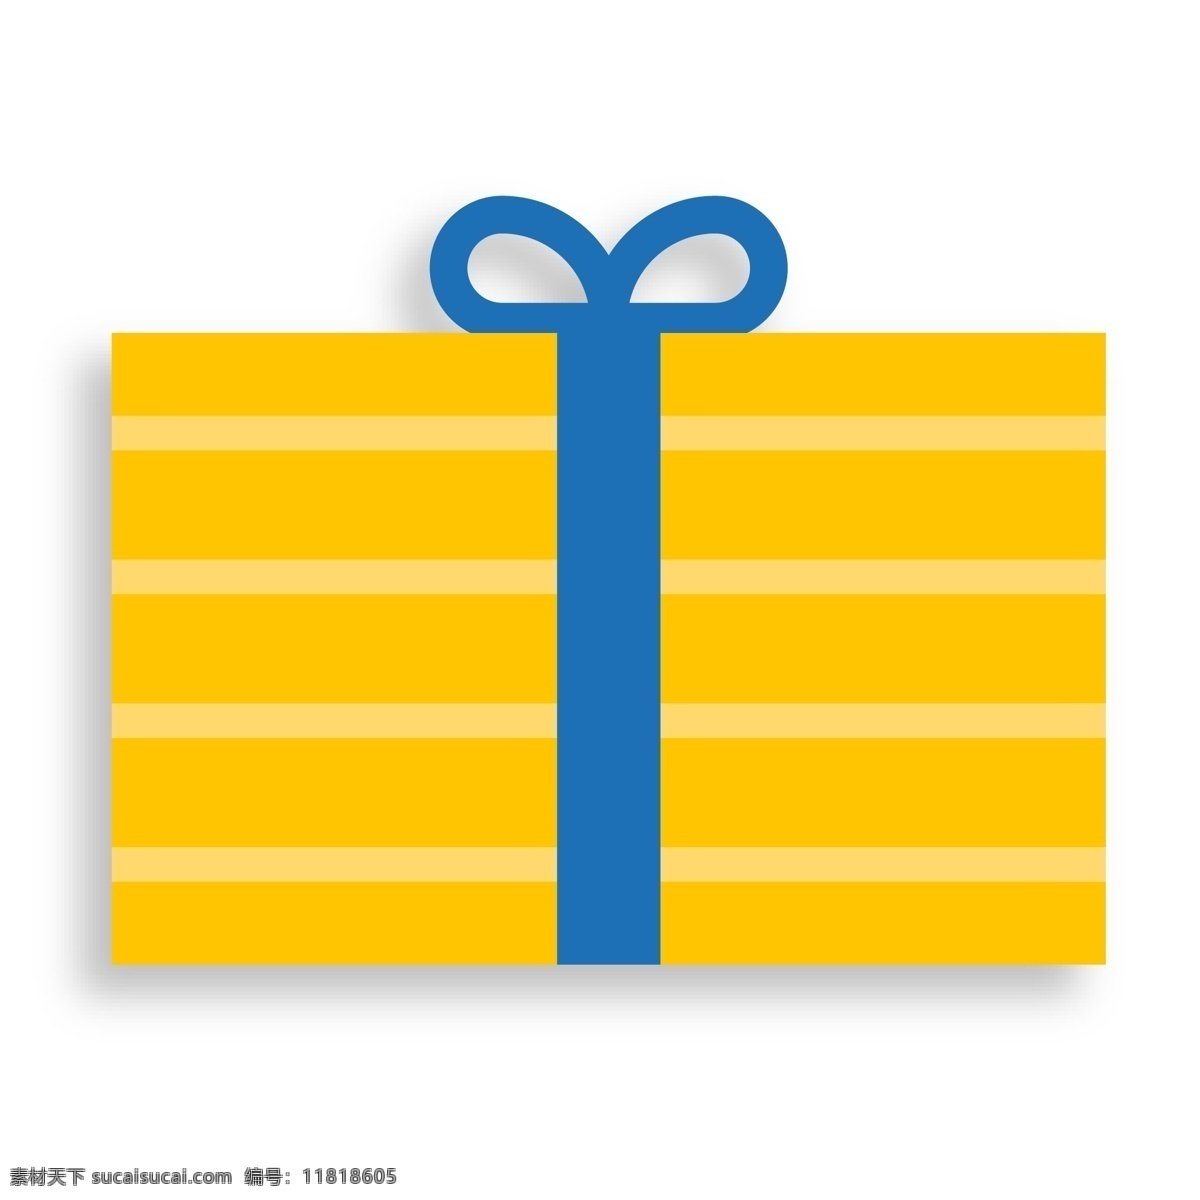 黄色 礼物 盒 装饰 扁平化 活动 节日 礼物盒 装饰素材